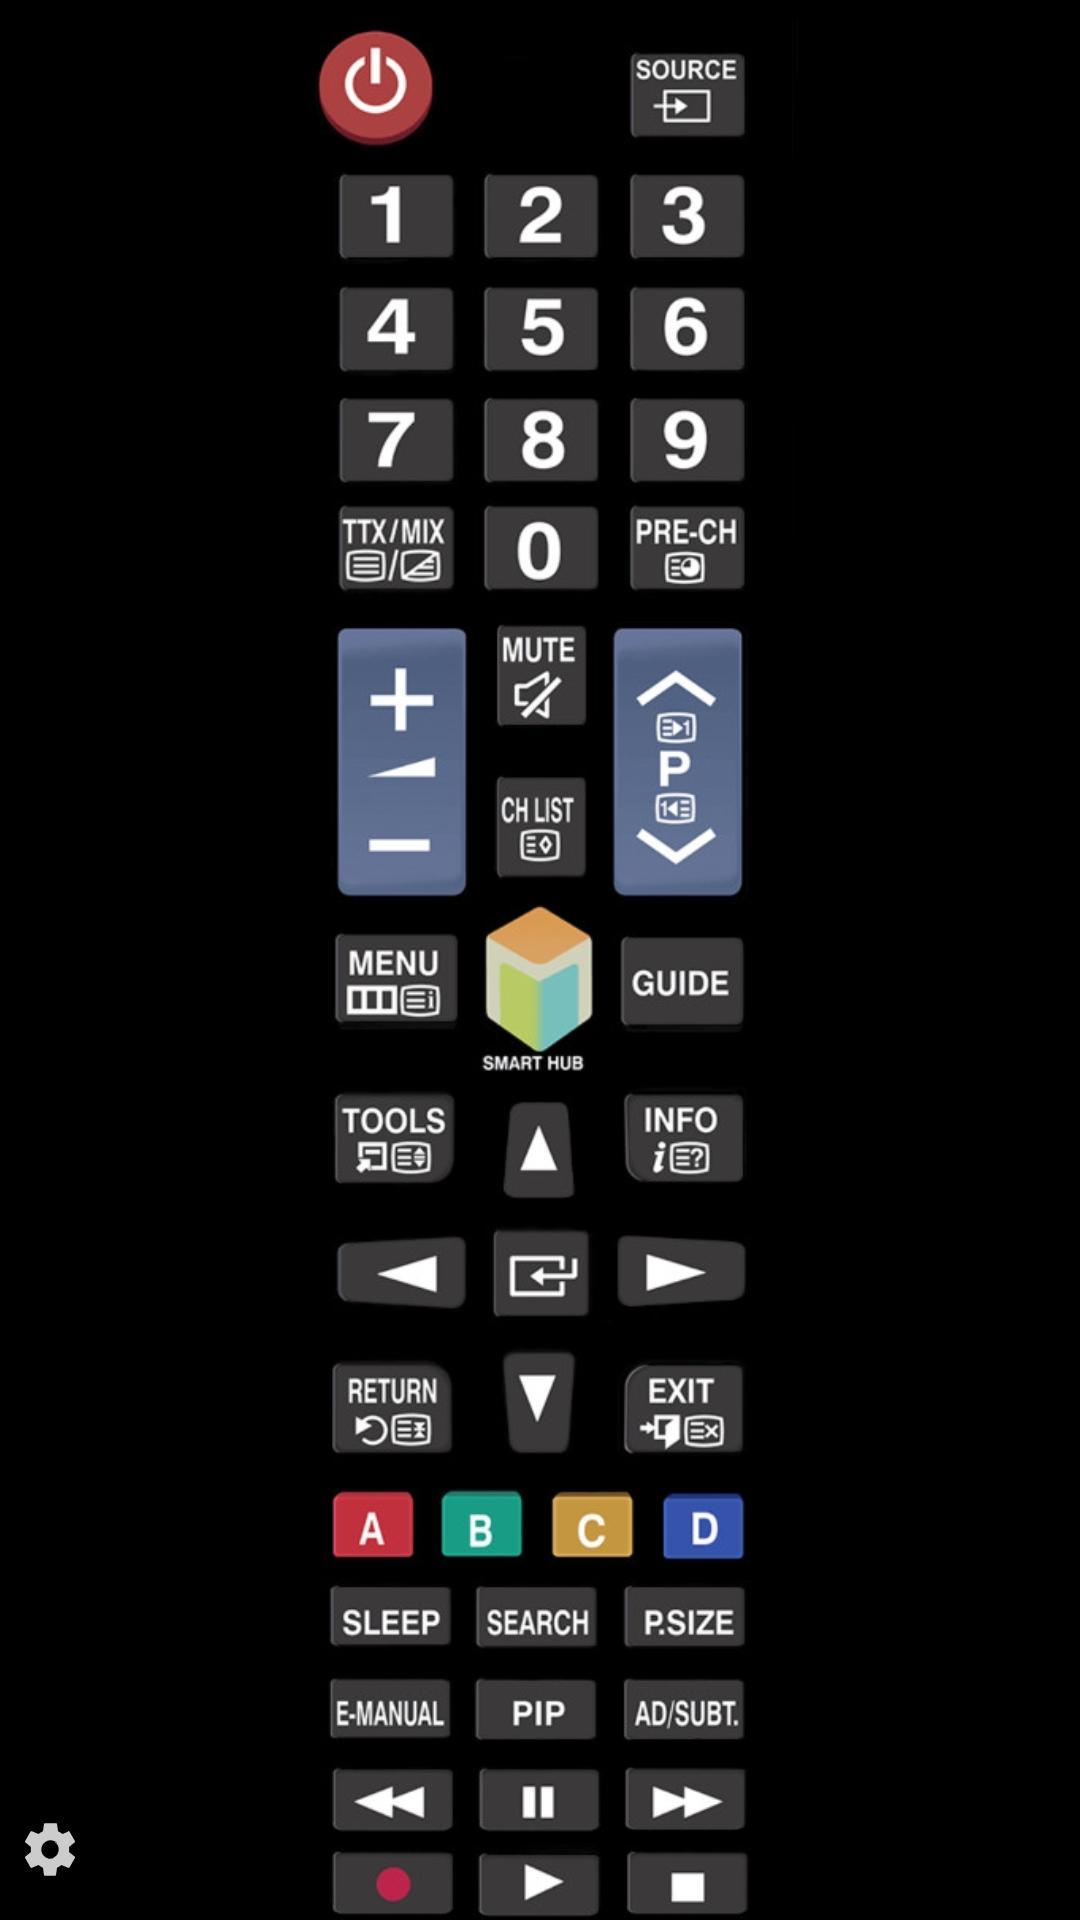 TV (Samsung) Remote Control für Android - APK herunterladen